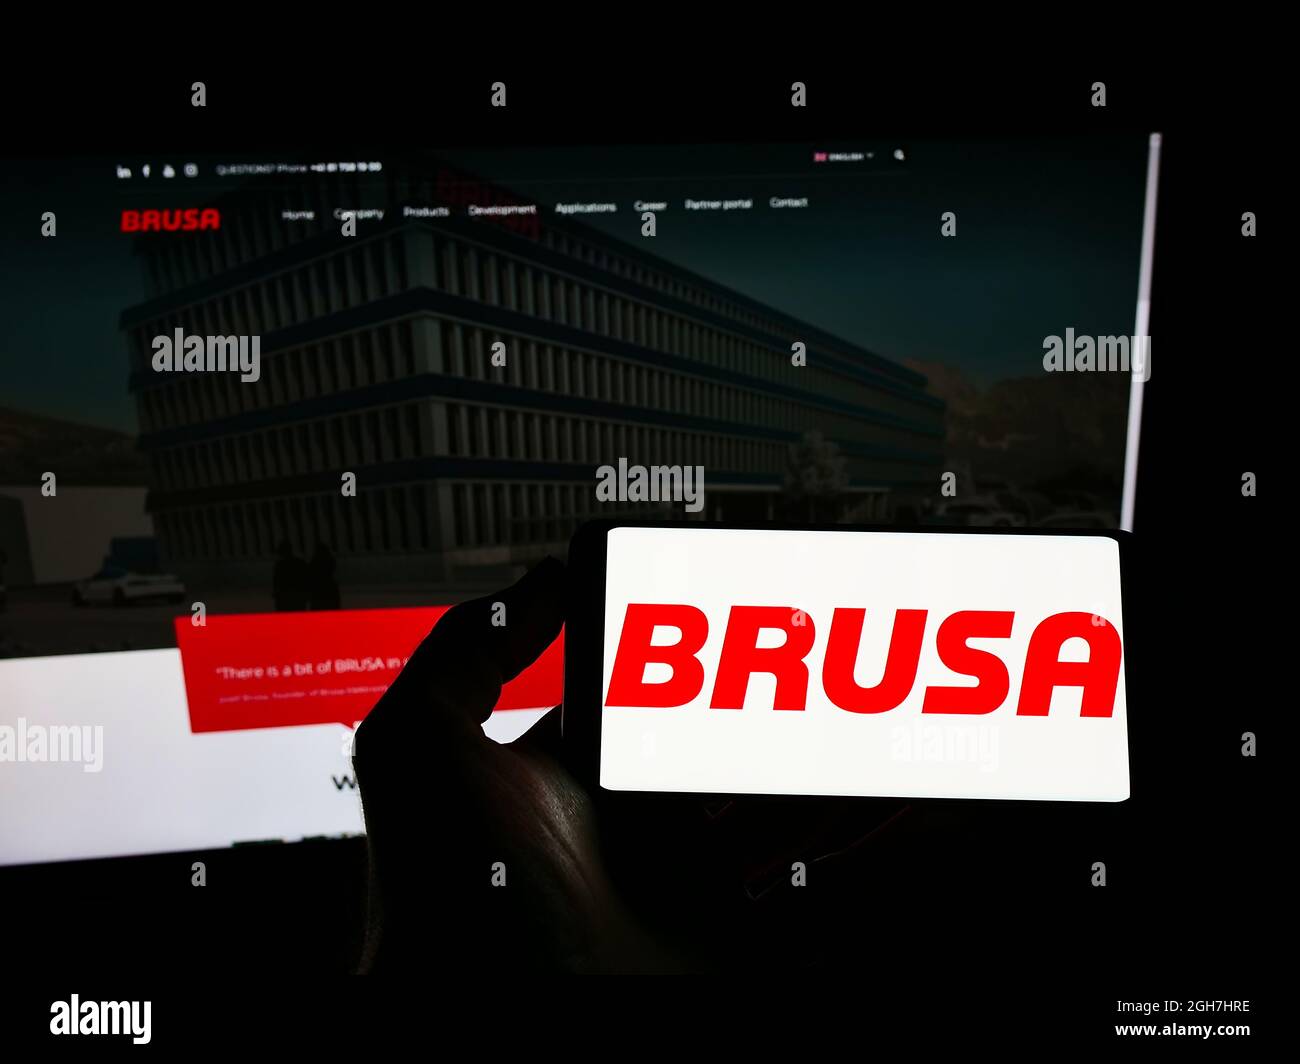 Persona que sostiene el teléfono móvil con el logotipo de la compañía suiza de electrónica BRUSA Elektronik AG en la pantalla delante de la página web. Enfoque en la pantalla del teléfono. Foto de stock